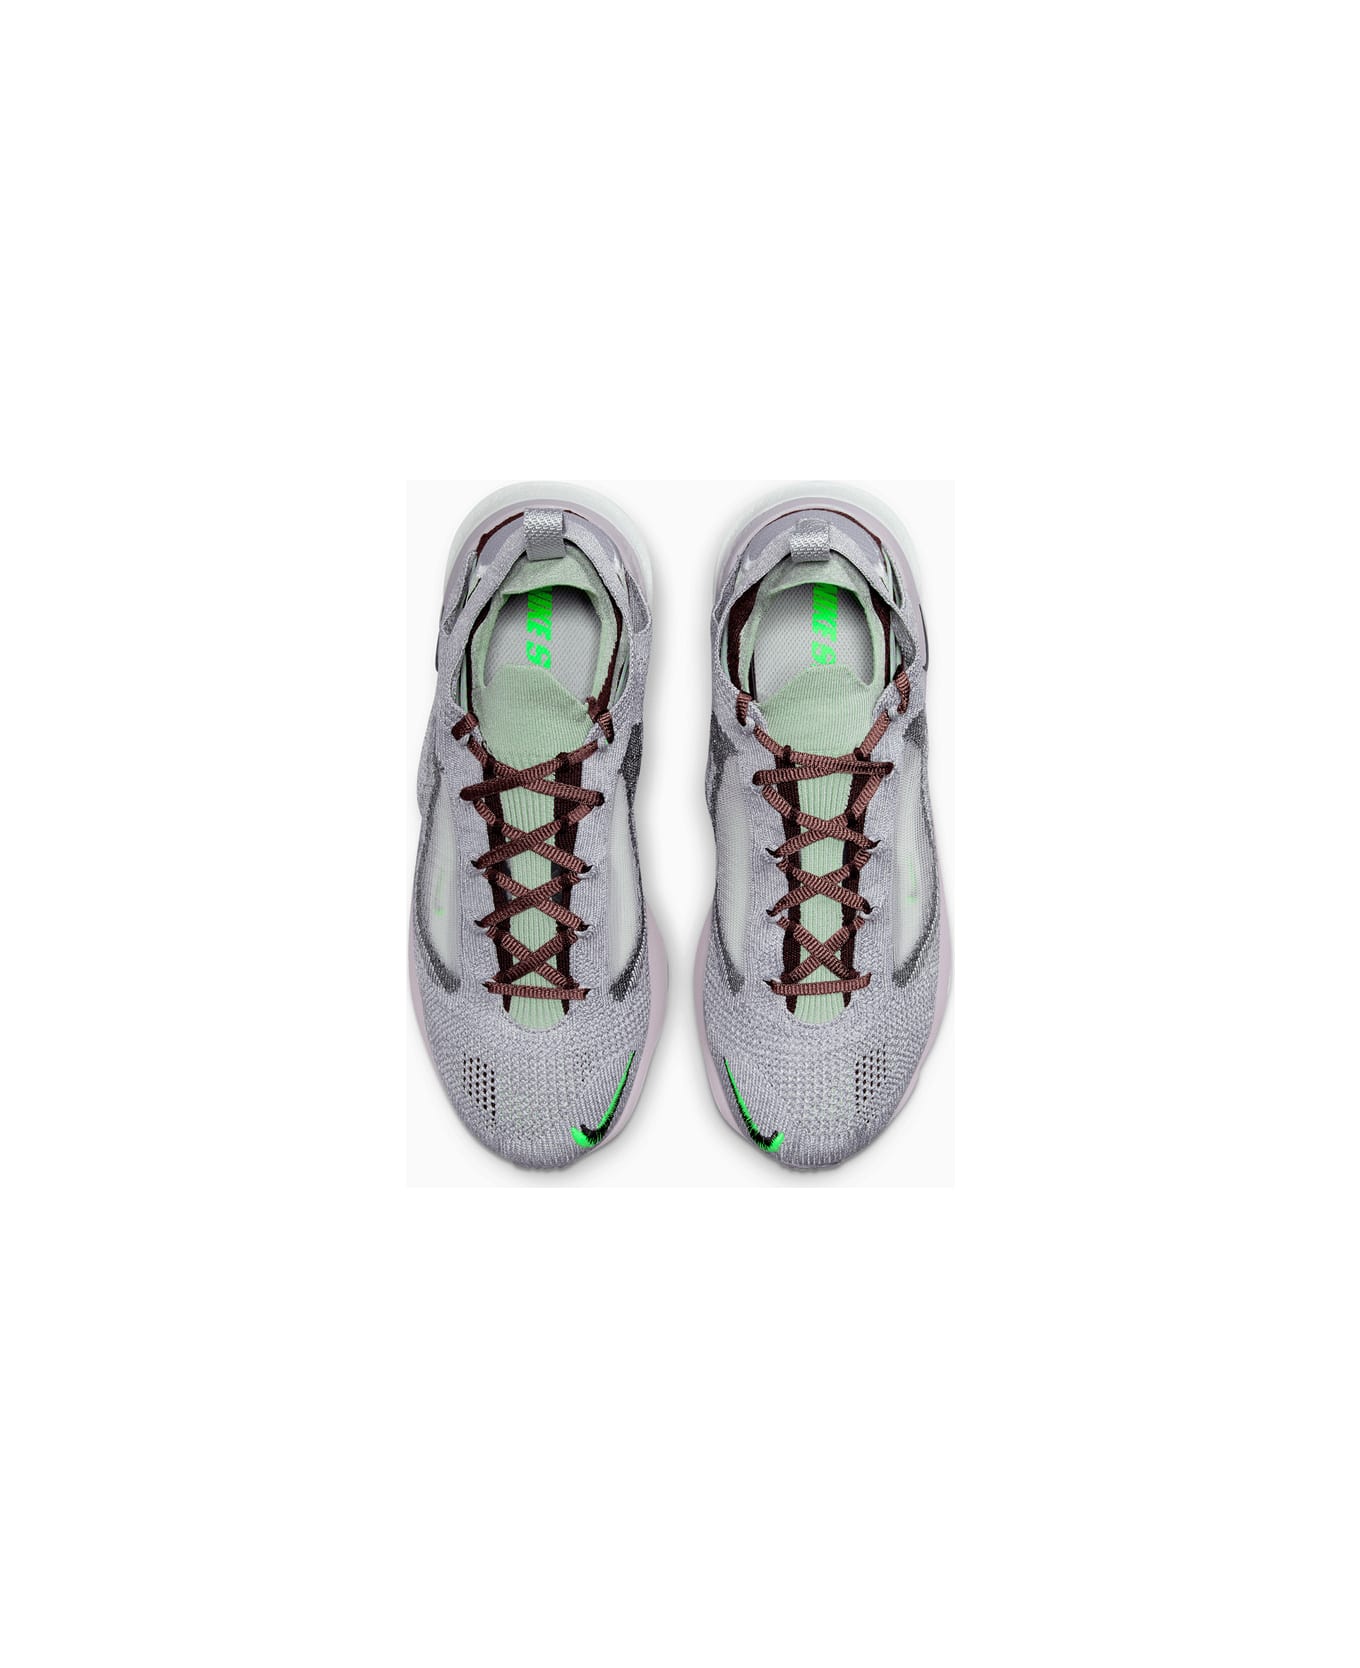 Nike Spark Flyknit Sneakers Dd1901-600 - Grey